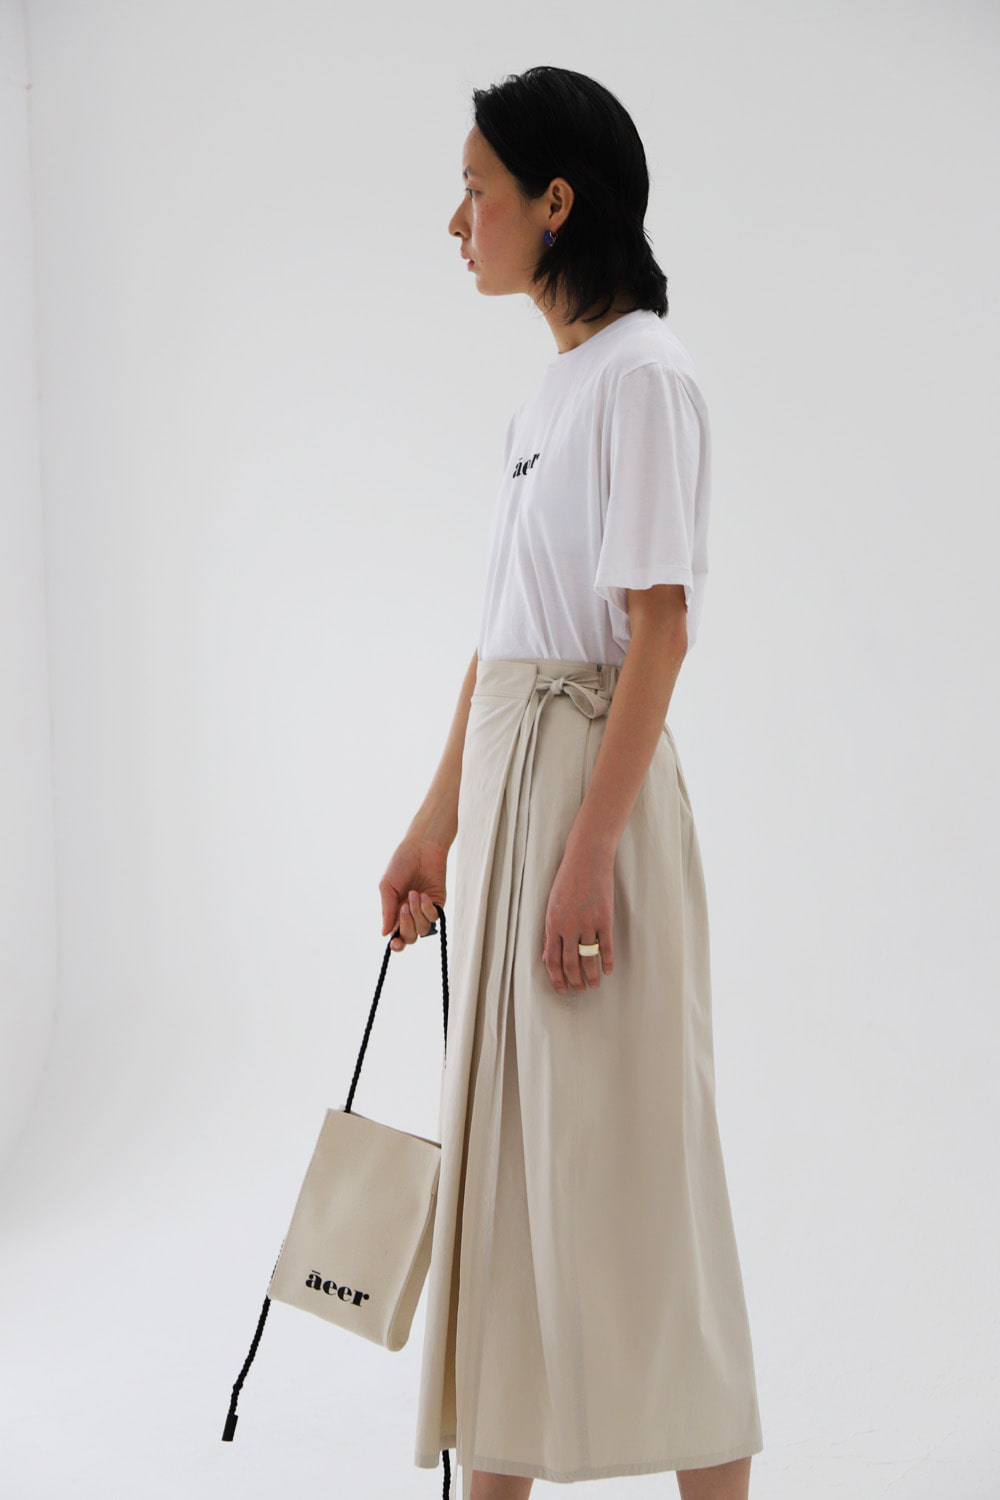 Skirt Eband Strap Light Beige / S size Only